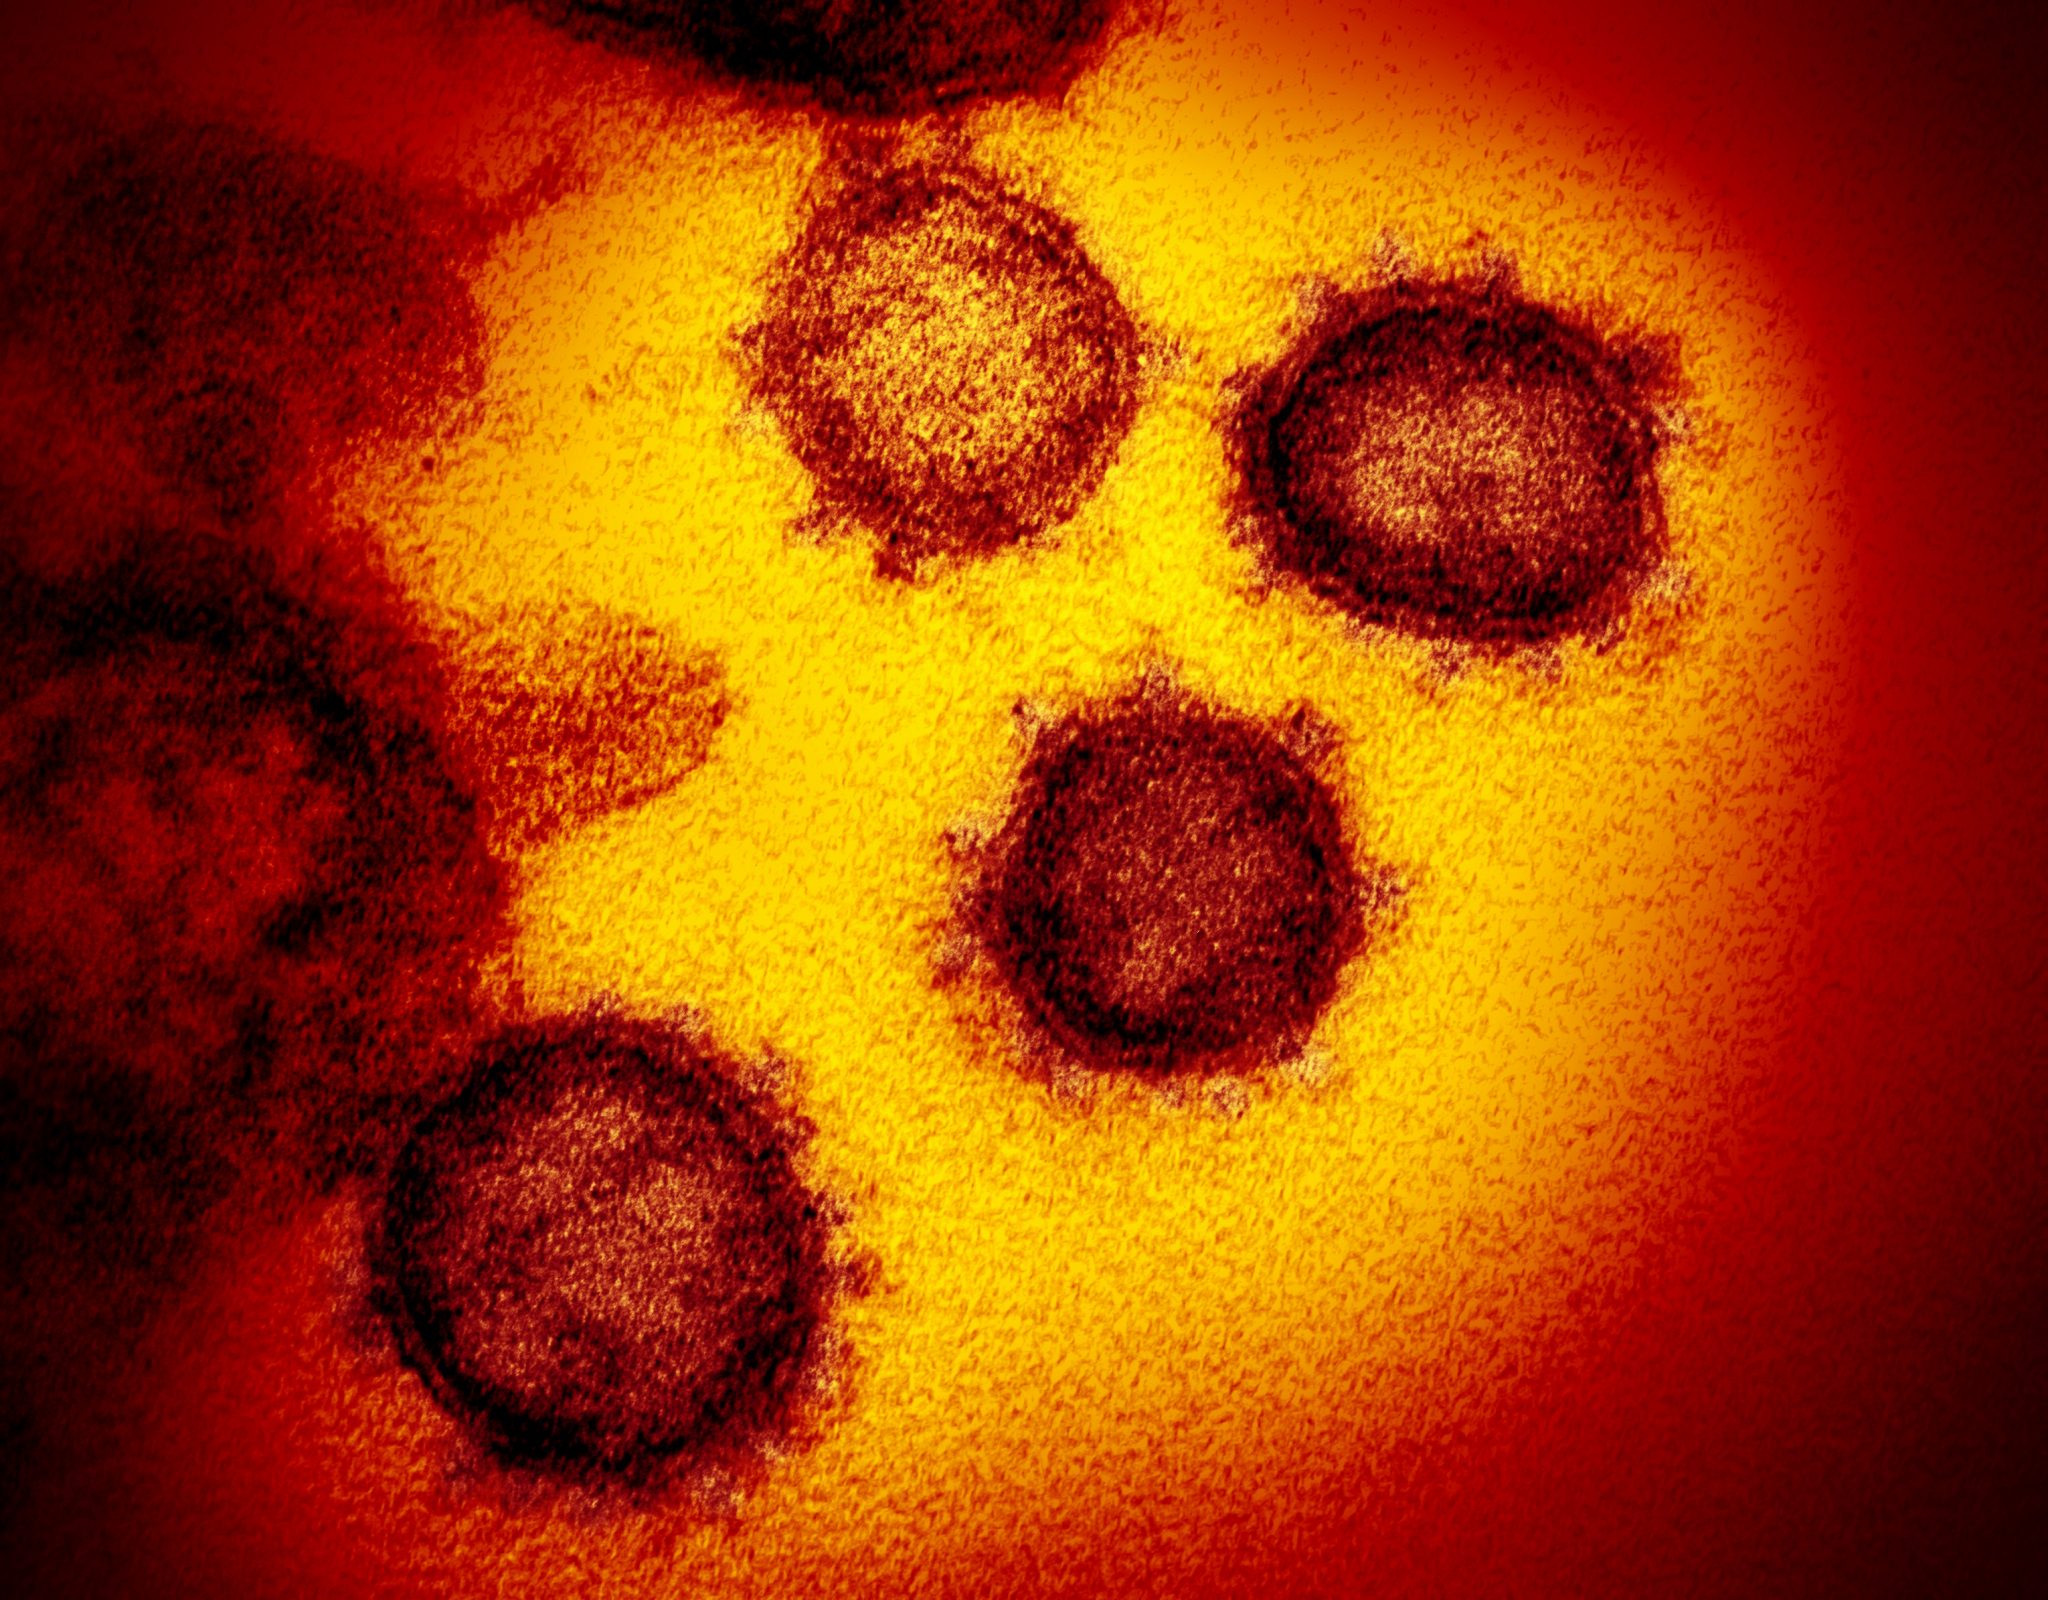 انواع علائم ویروس کرونا کووید 19 نشانه ها درمان و پیشگیری مراحل خفیف تا شدید بیماری روز به روز